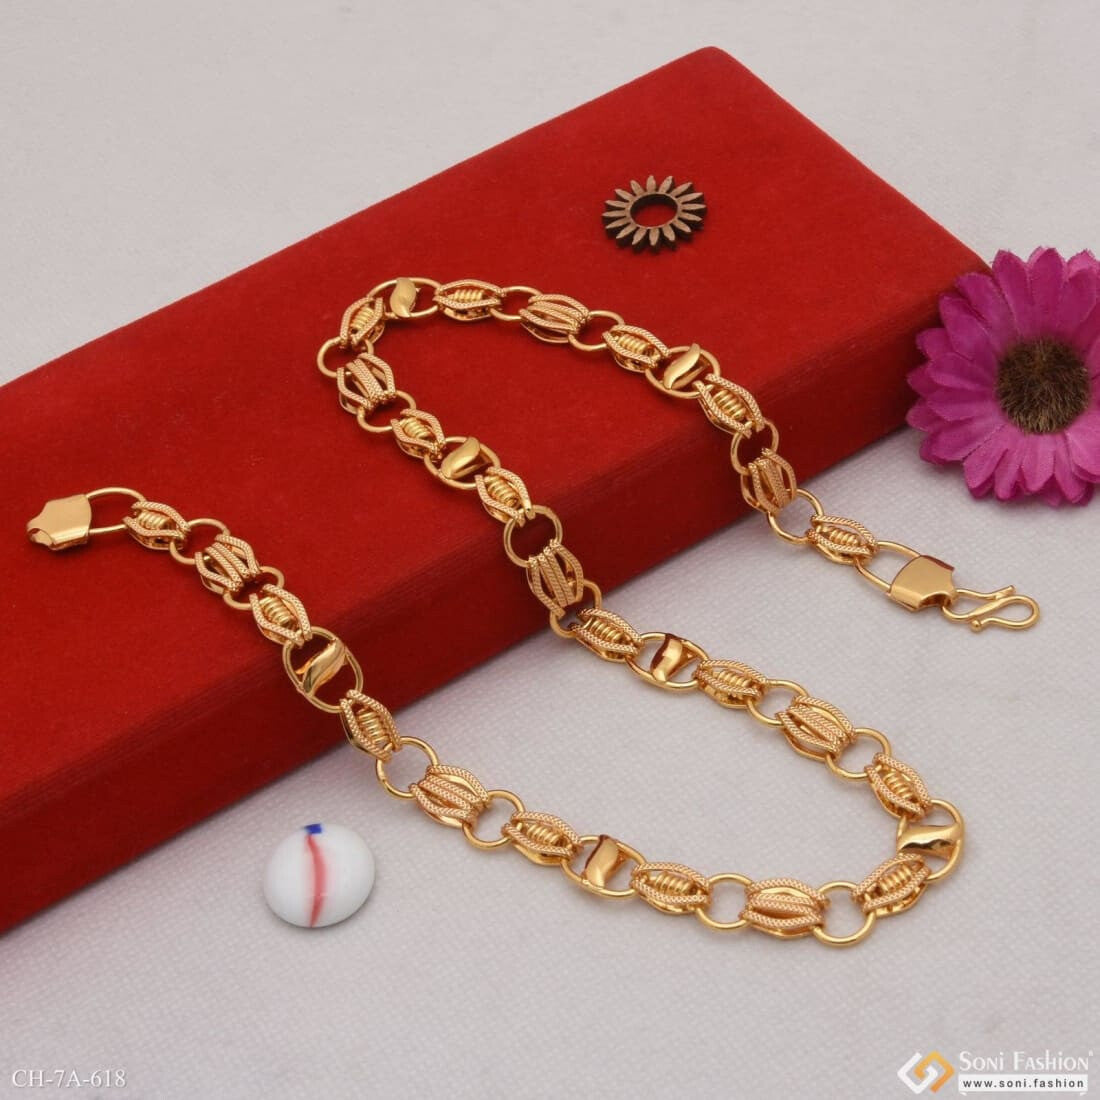 Buy Golden Navratna Ring + Chain + Bracelet (NRCB2) Online at Best Price in  India on Naaptol.com